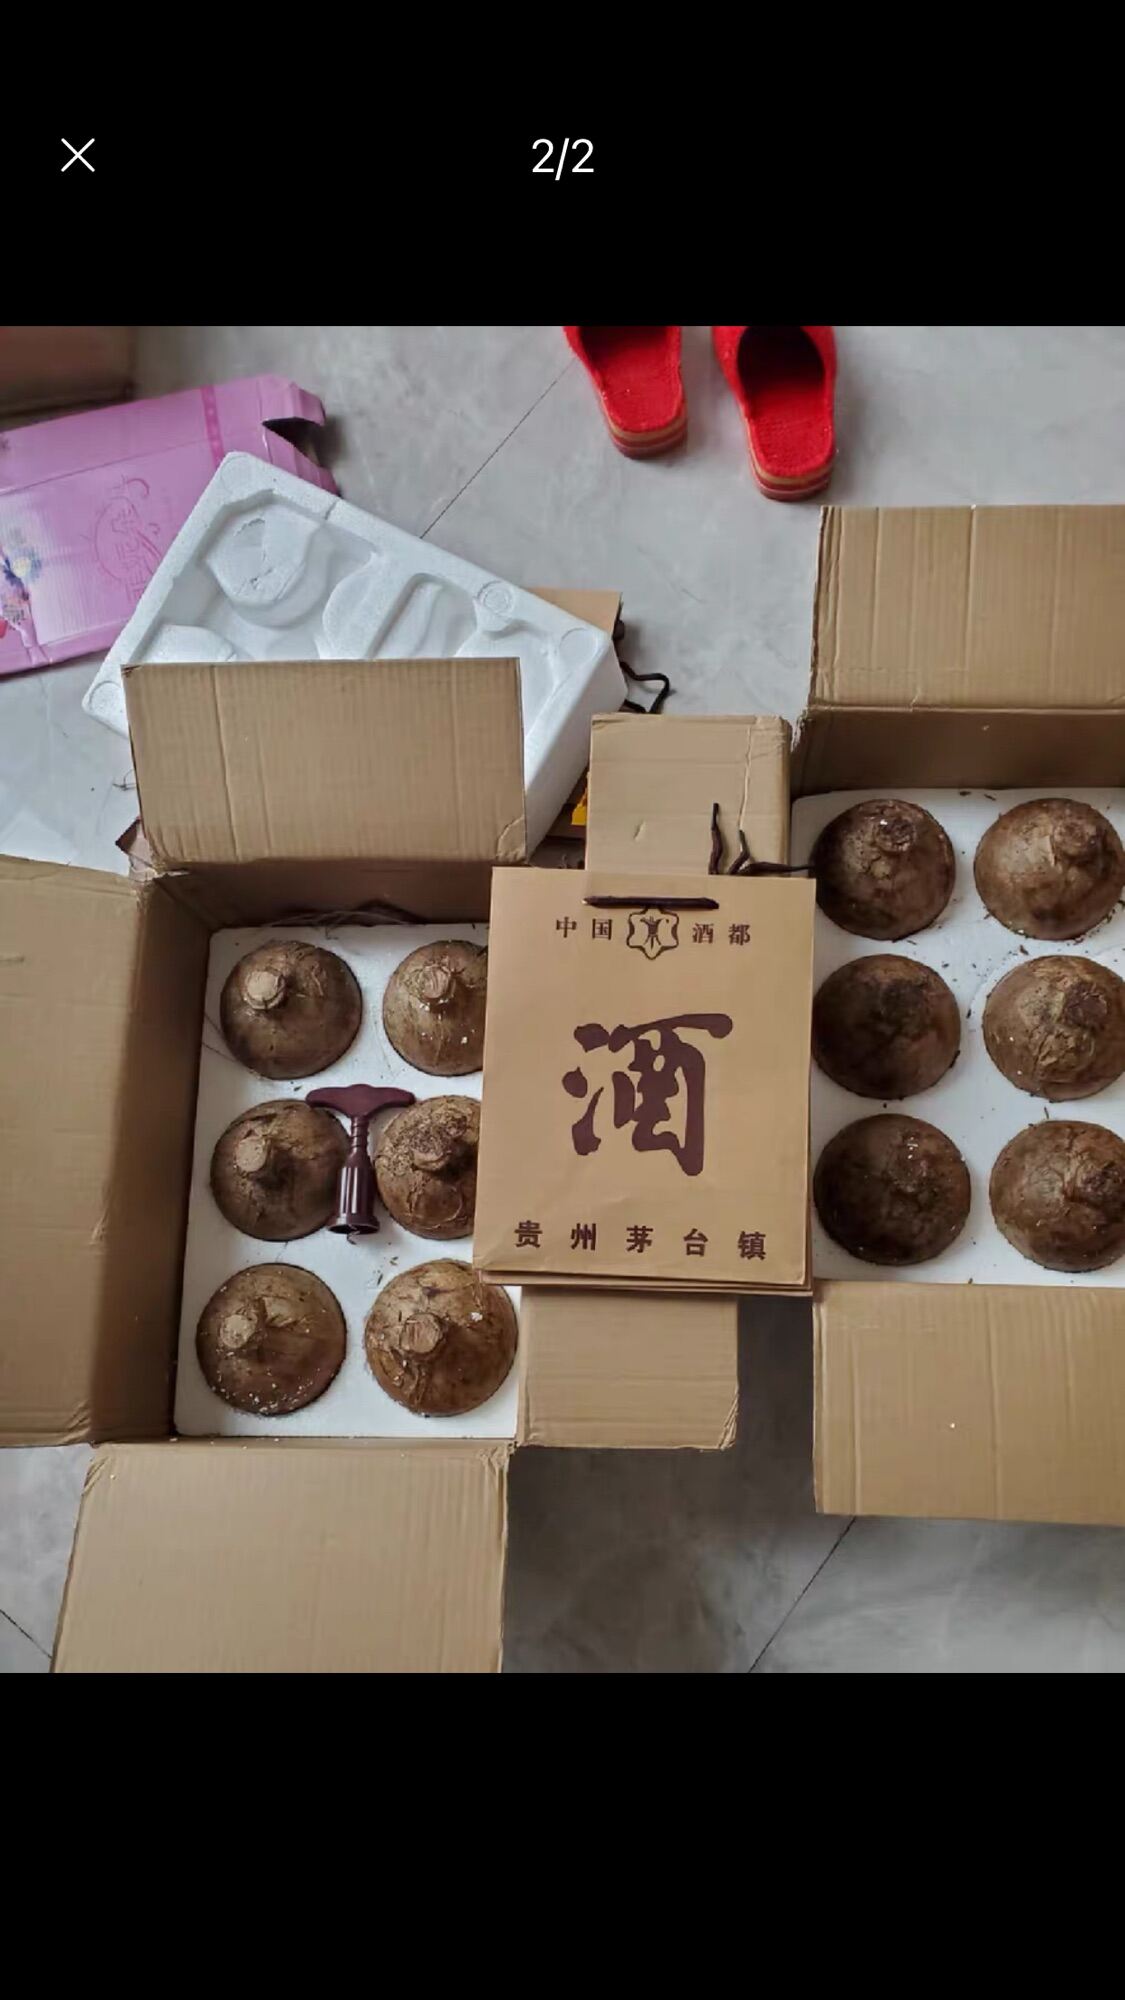 01 thùng Mao đai hạ thổ 10 năm chính gốc Guizhou thơm ngon loại thùng giấy